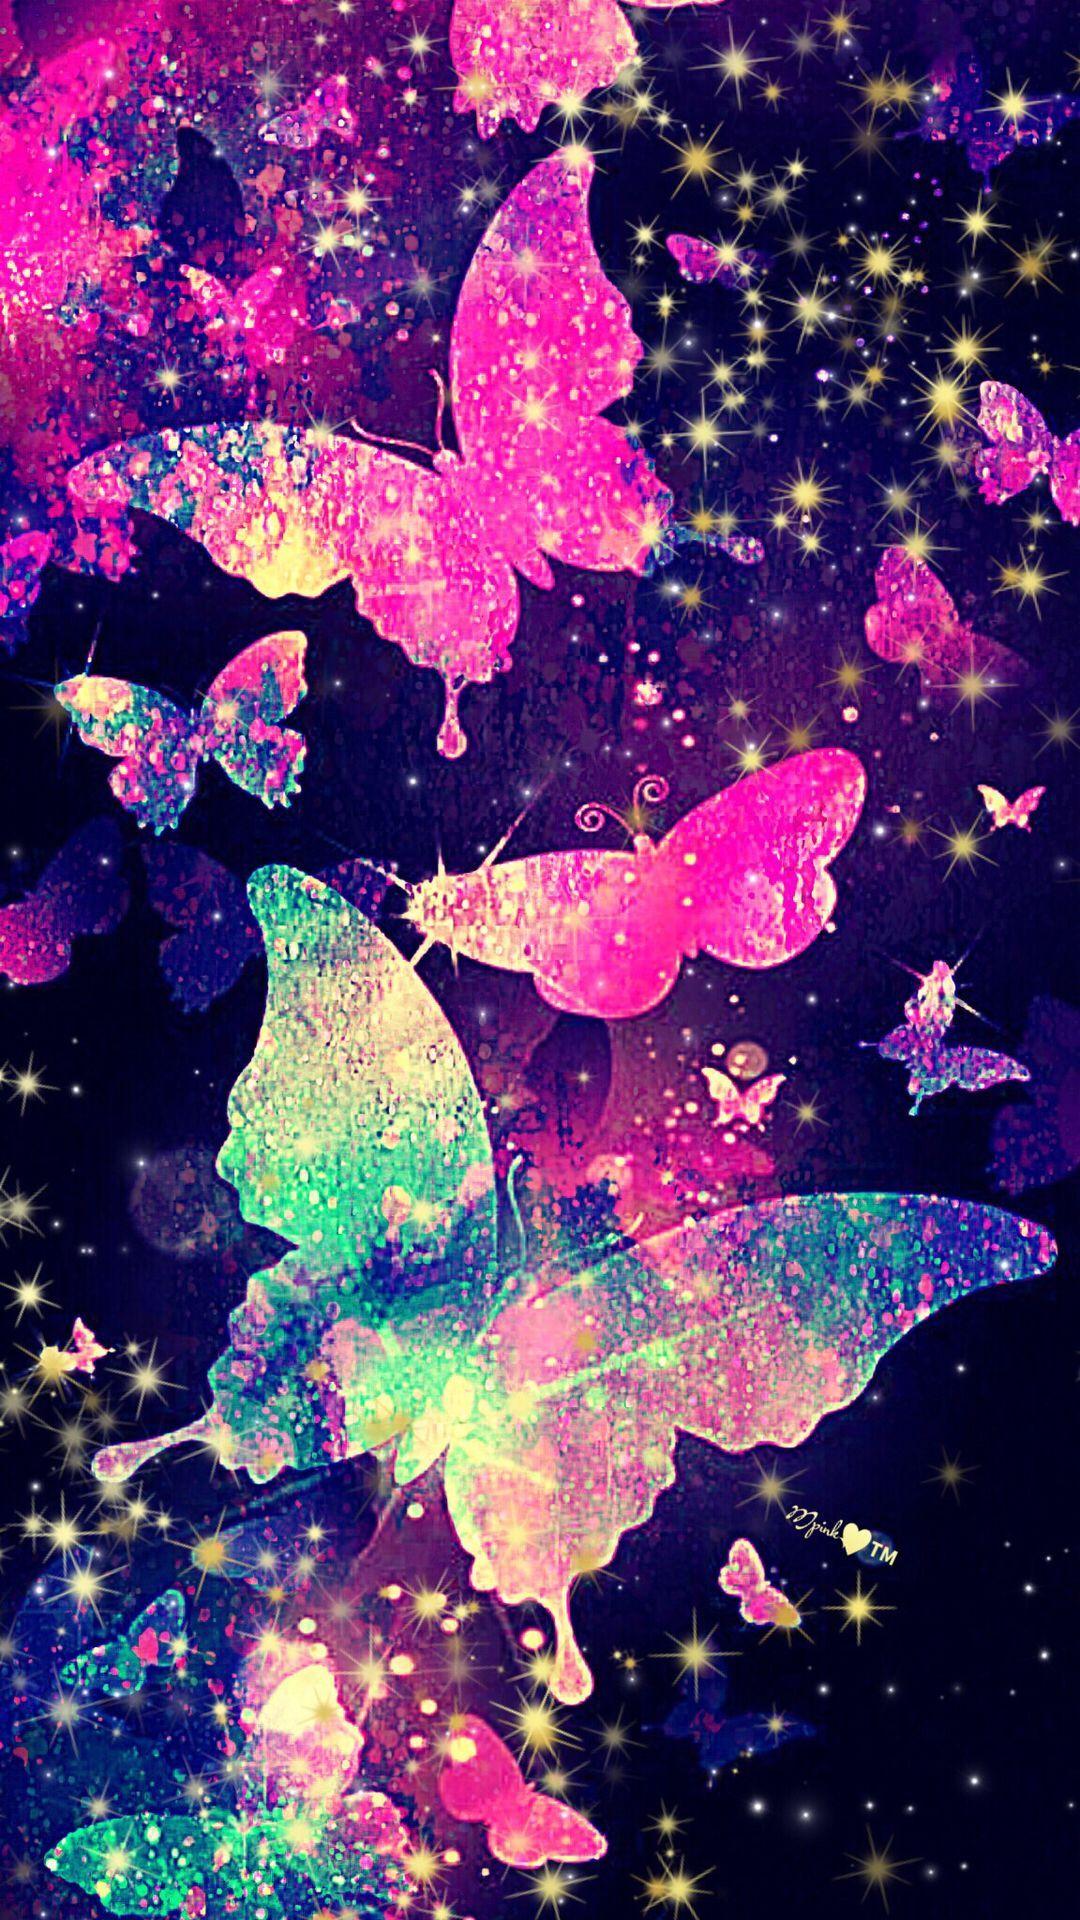 Purple Glitter Butterfly Wallpapers - Top Free Purple ...